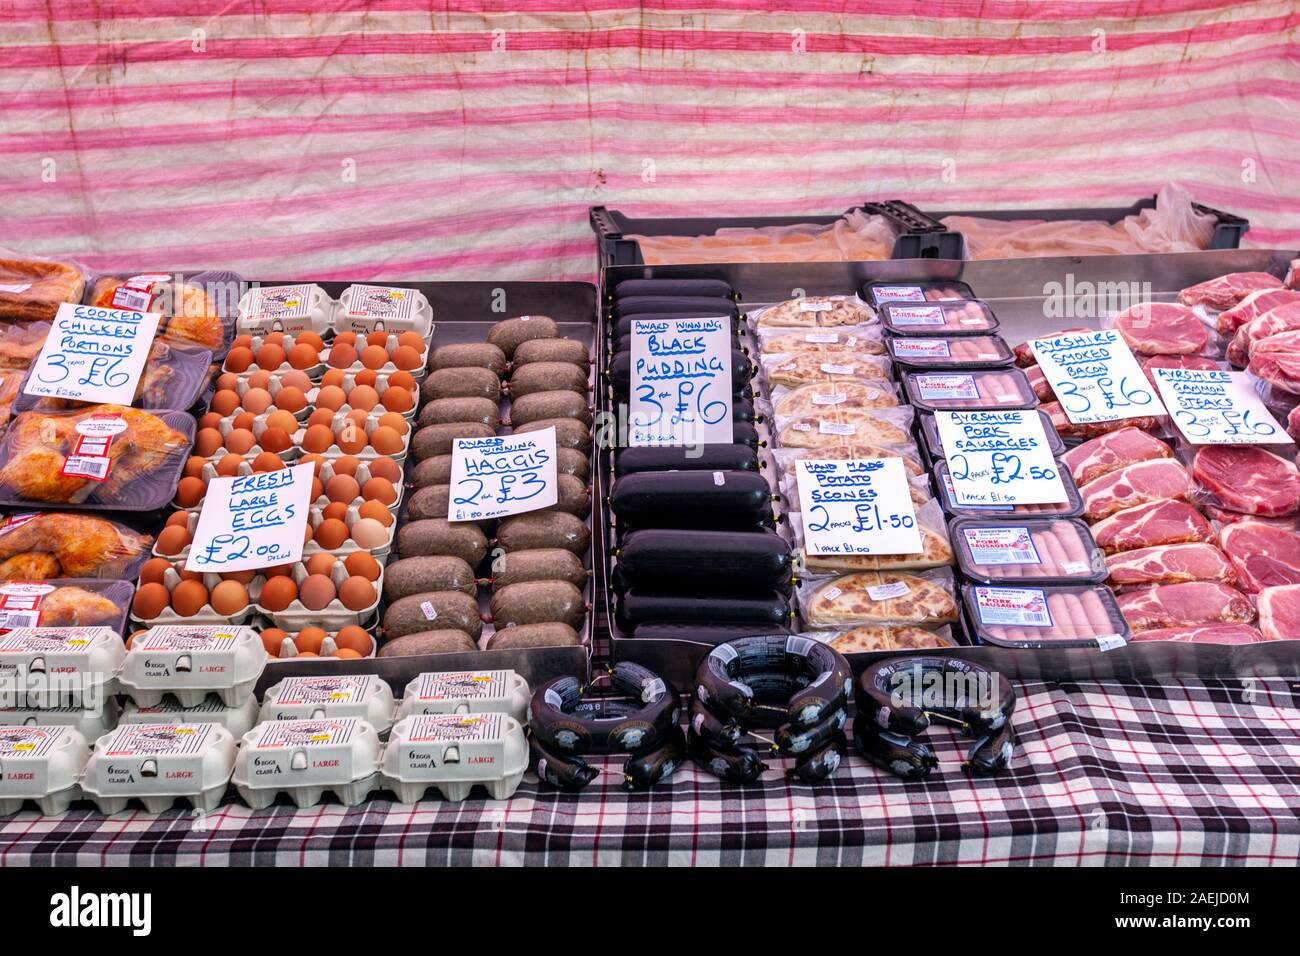 Food Market vente de boudin noir, haggis, oeufs, bacon, Fort William, Highland, Scotland, UK Banque D'Images